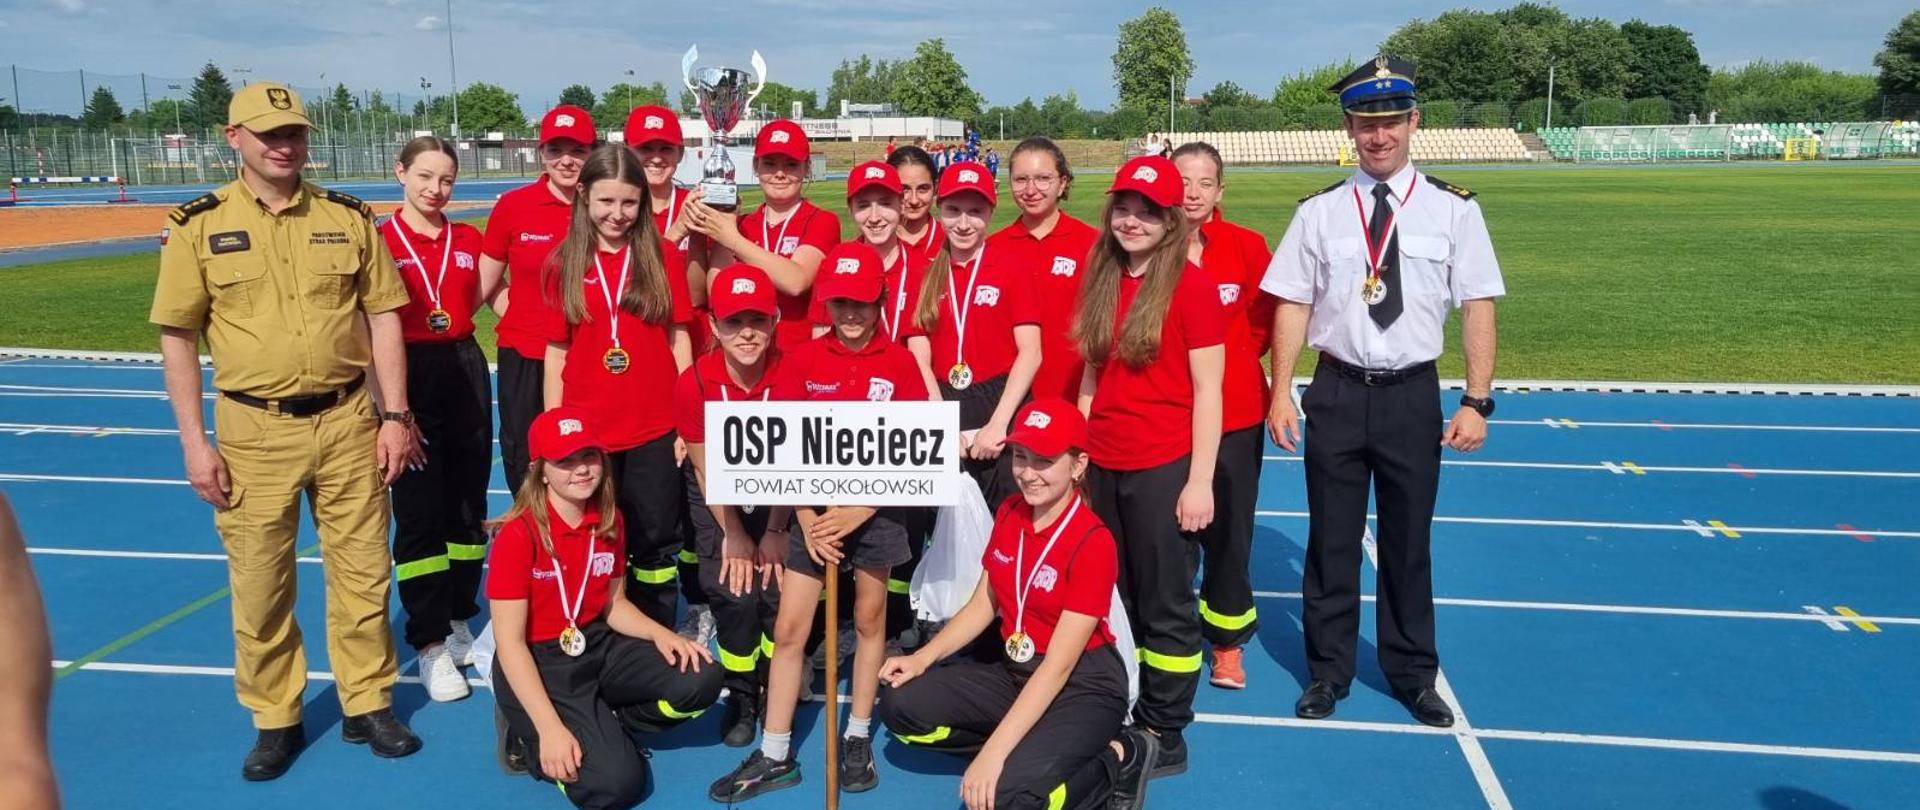 Udział jednostki OSP Nieciecz w Wojewódzkich Eliminacjach Zawodów Sportowo-Pożarniczych Młodzieżowych Drużyn Pożarniczych - na zdjęciu na stadionie drużyna MDP po zawodach